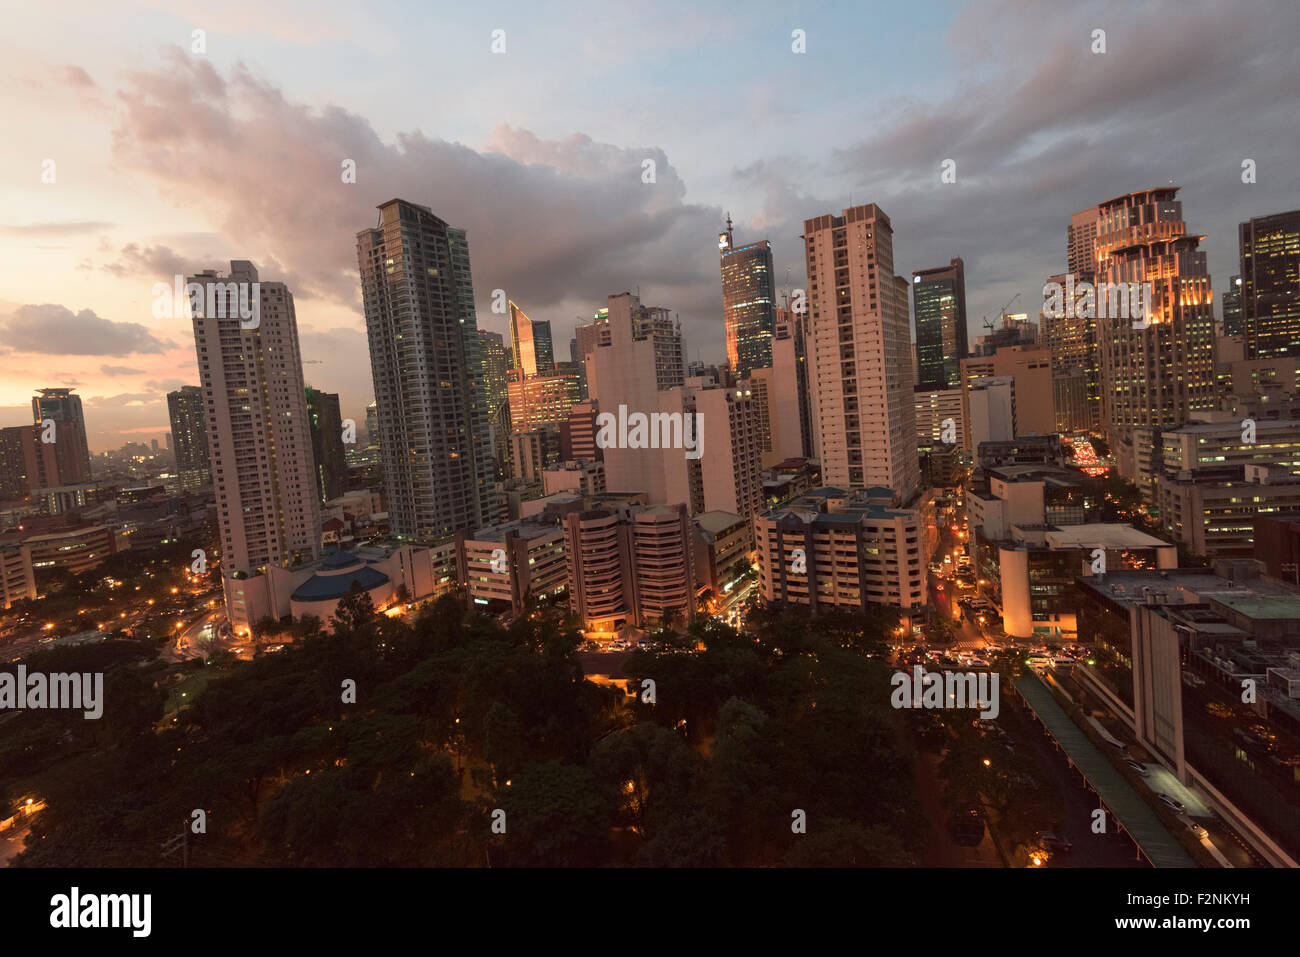 Manila, Filippine - 18 sett, 2015: Makati lo skyline della citta'. Makati City è uno dei più sviluppati distretto commerciale di Metro uomo Foto Stock